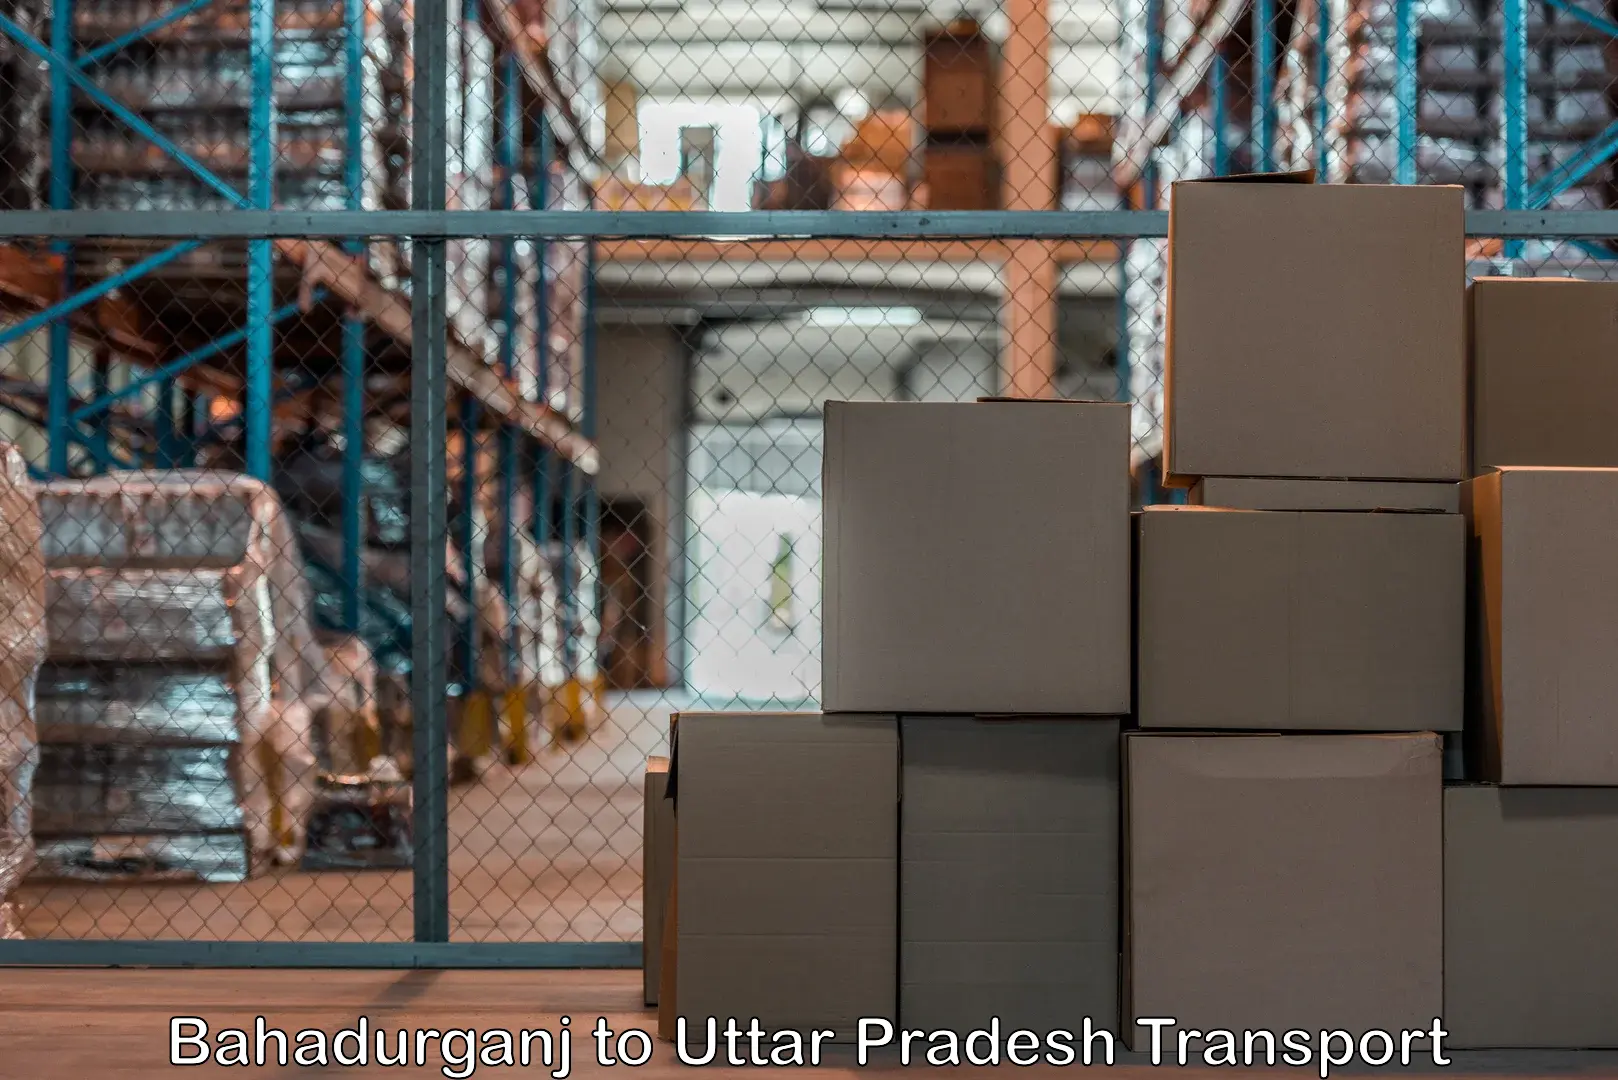 Daily parcel service transport Bahadurganj to Hamirpur Uttar Pradesh